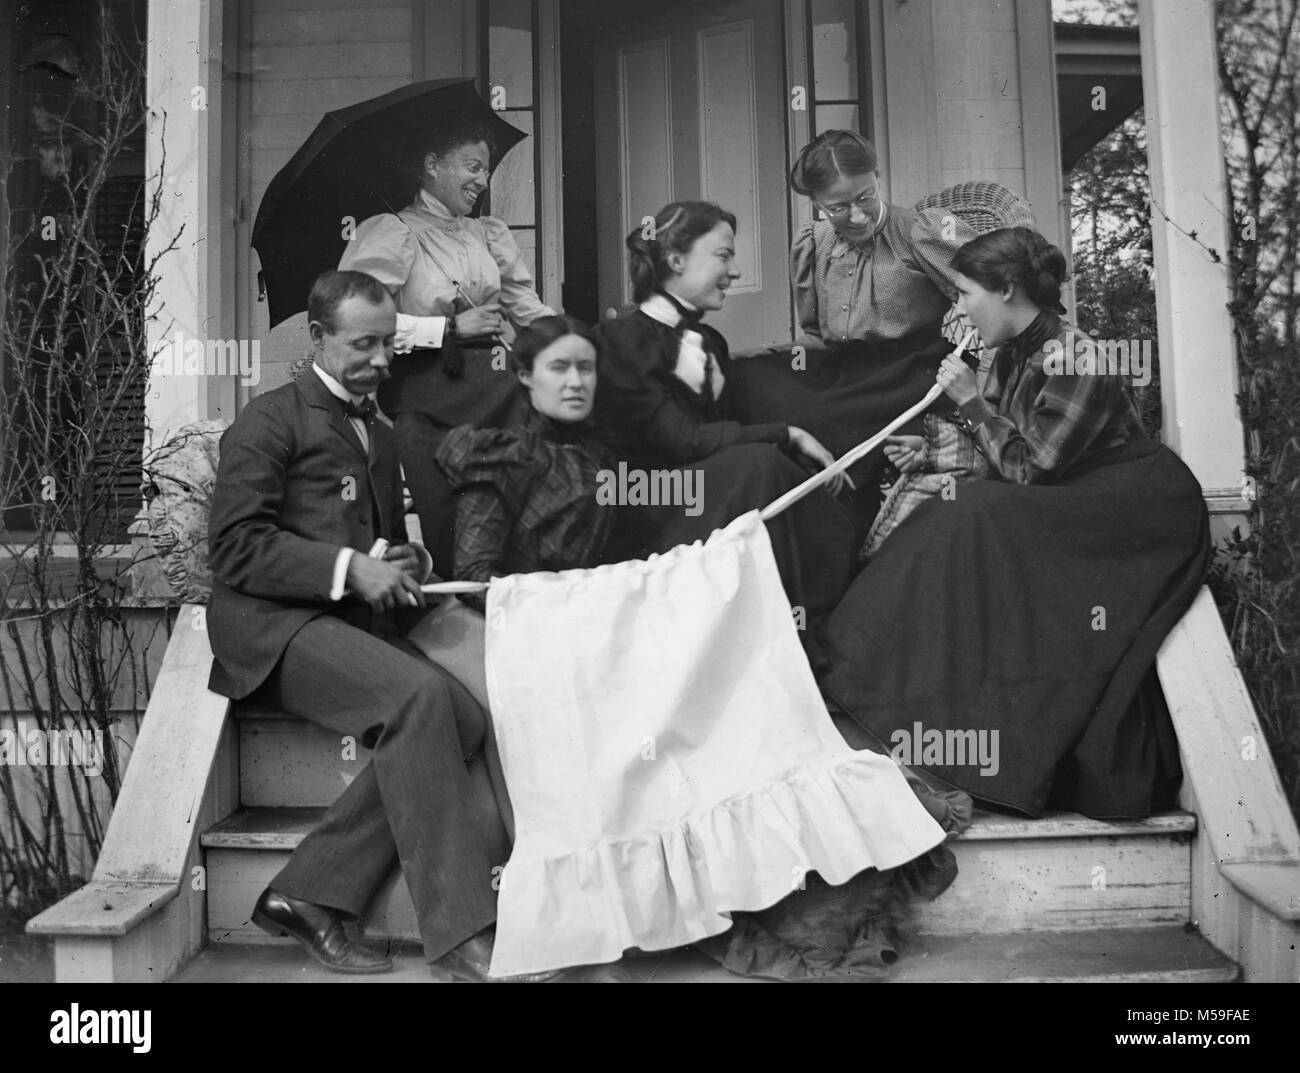 Wacky Victorians Erscheinen ein Kind hinter eine Schürze für ein Foto auf der Veranda zu verstecken, Ca. 1900. Stockfoto